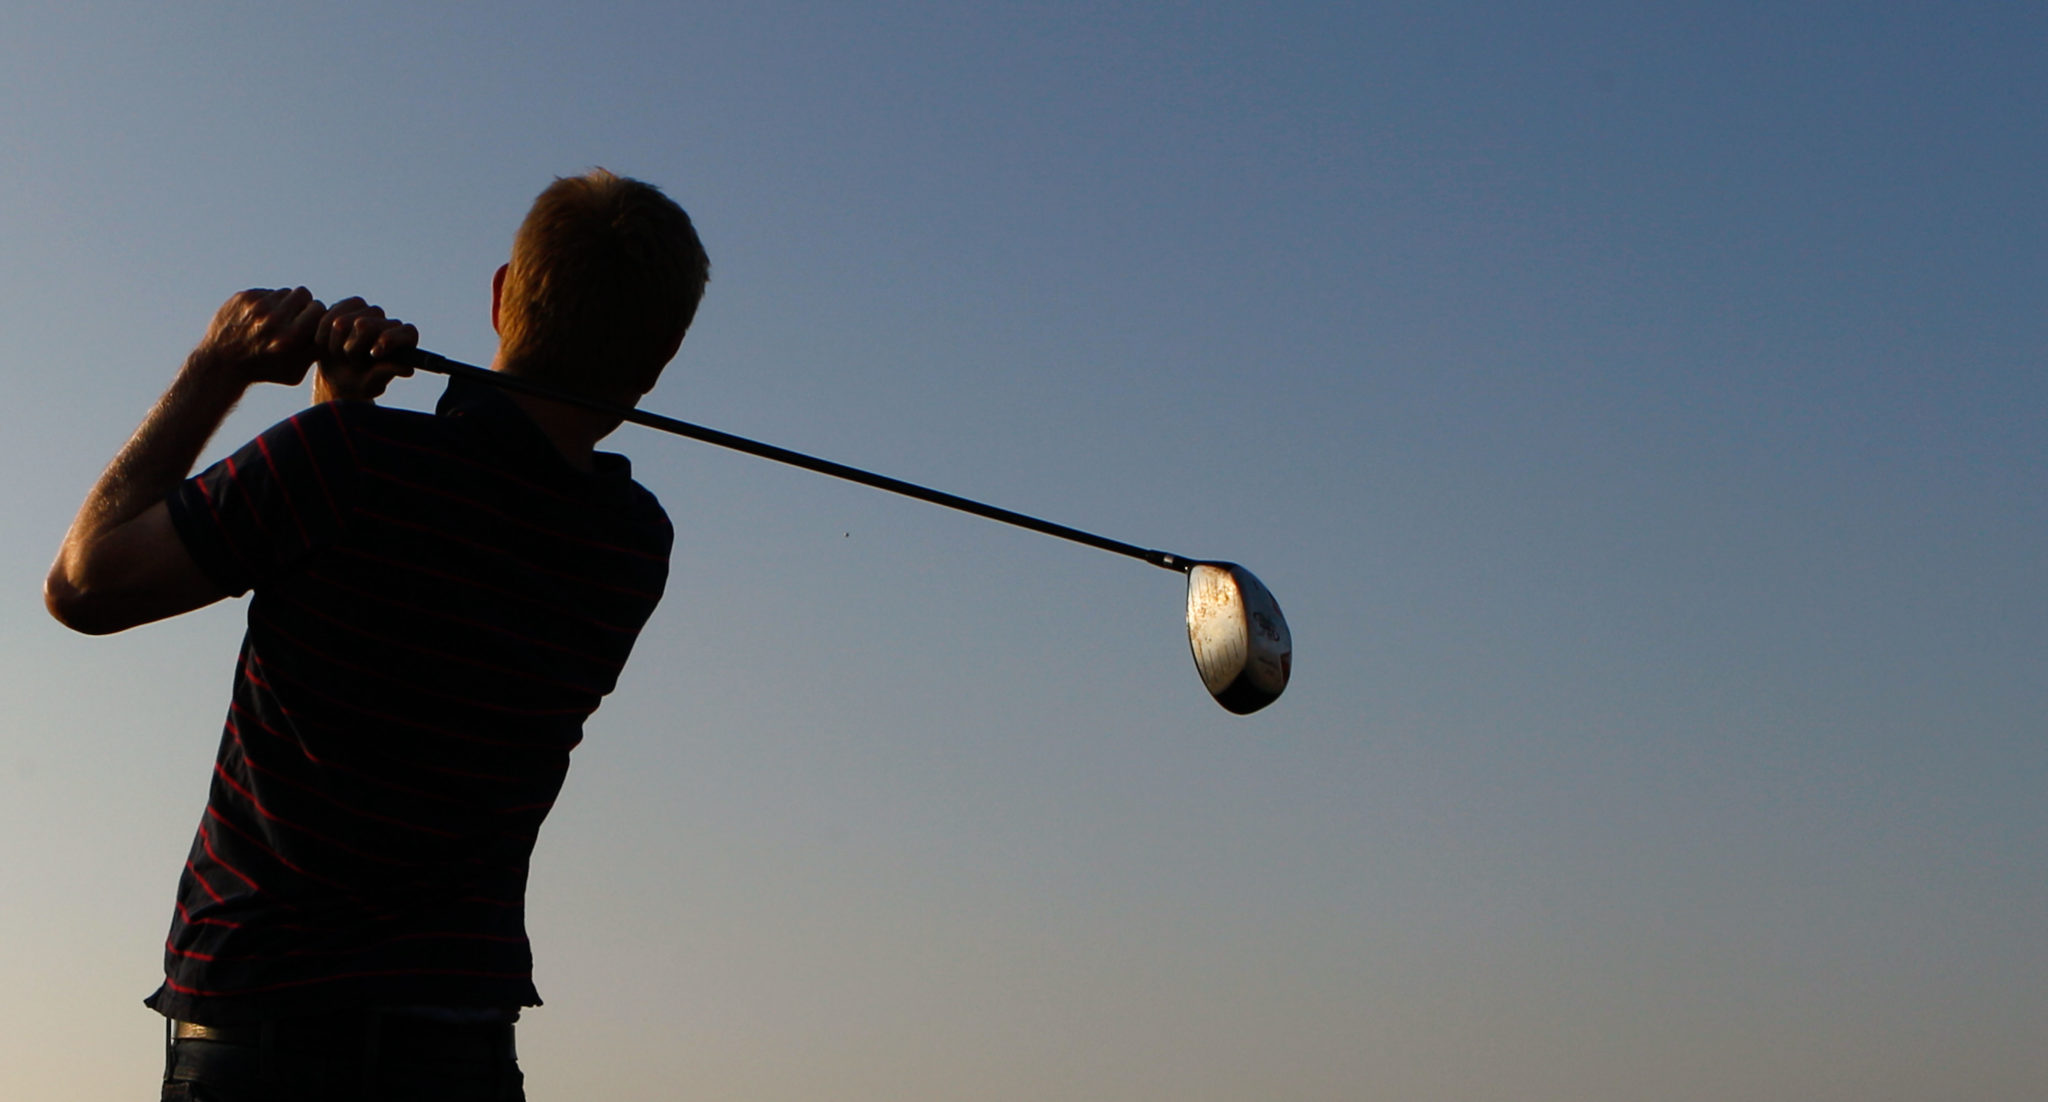 A golfer swinging a club.